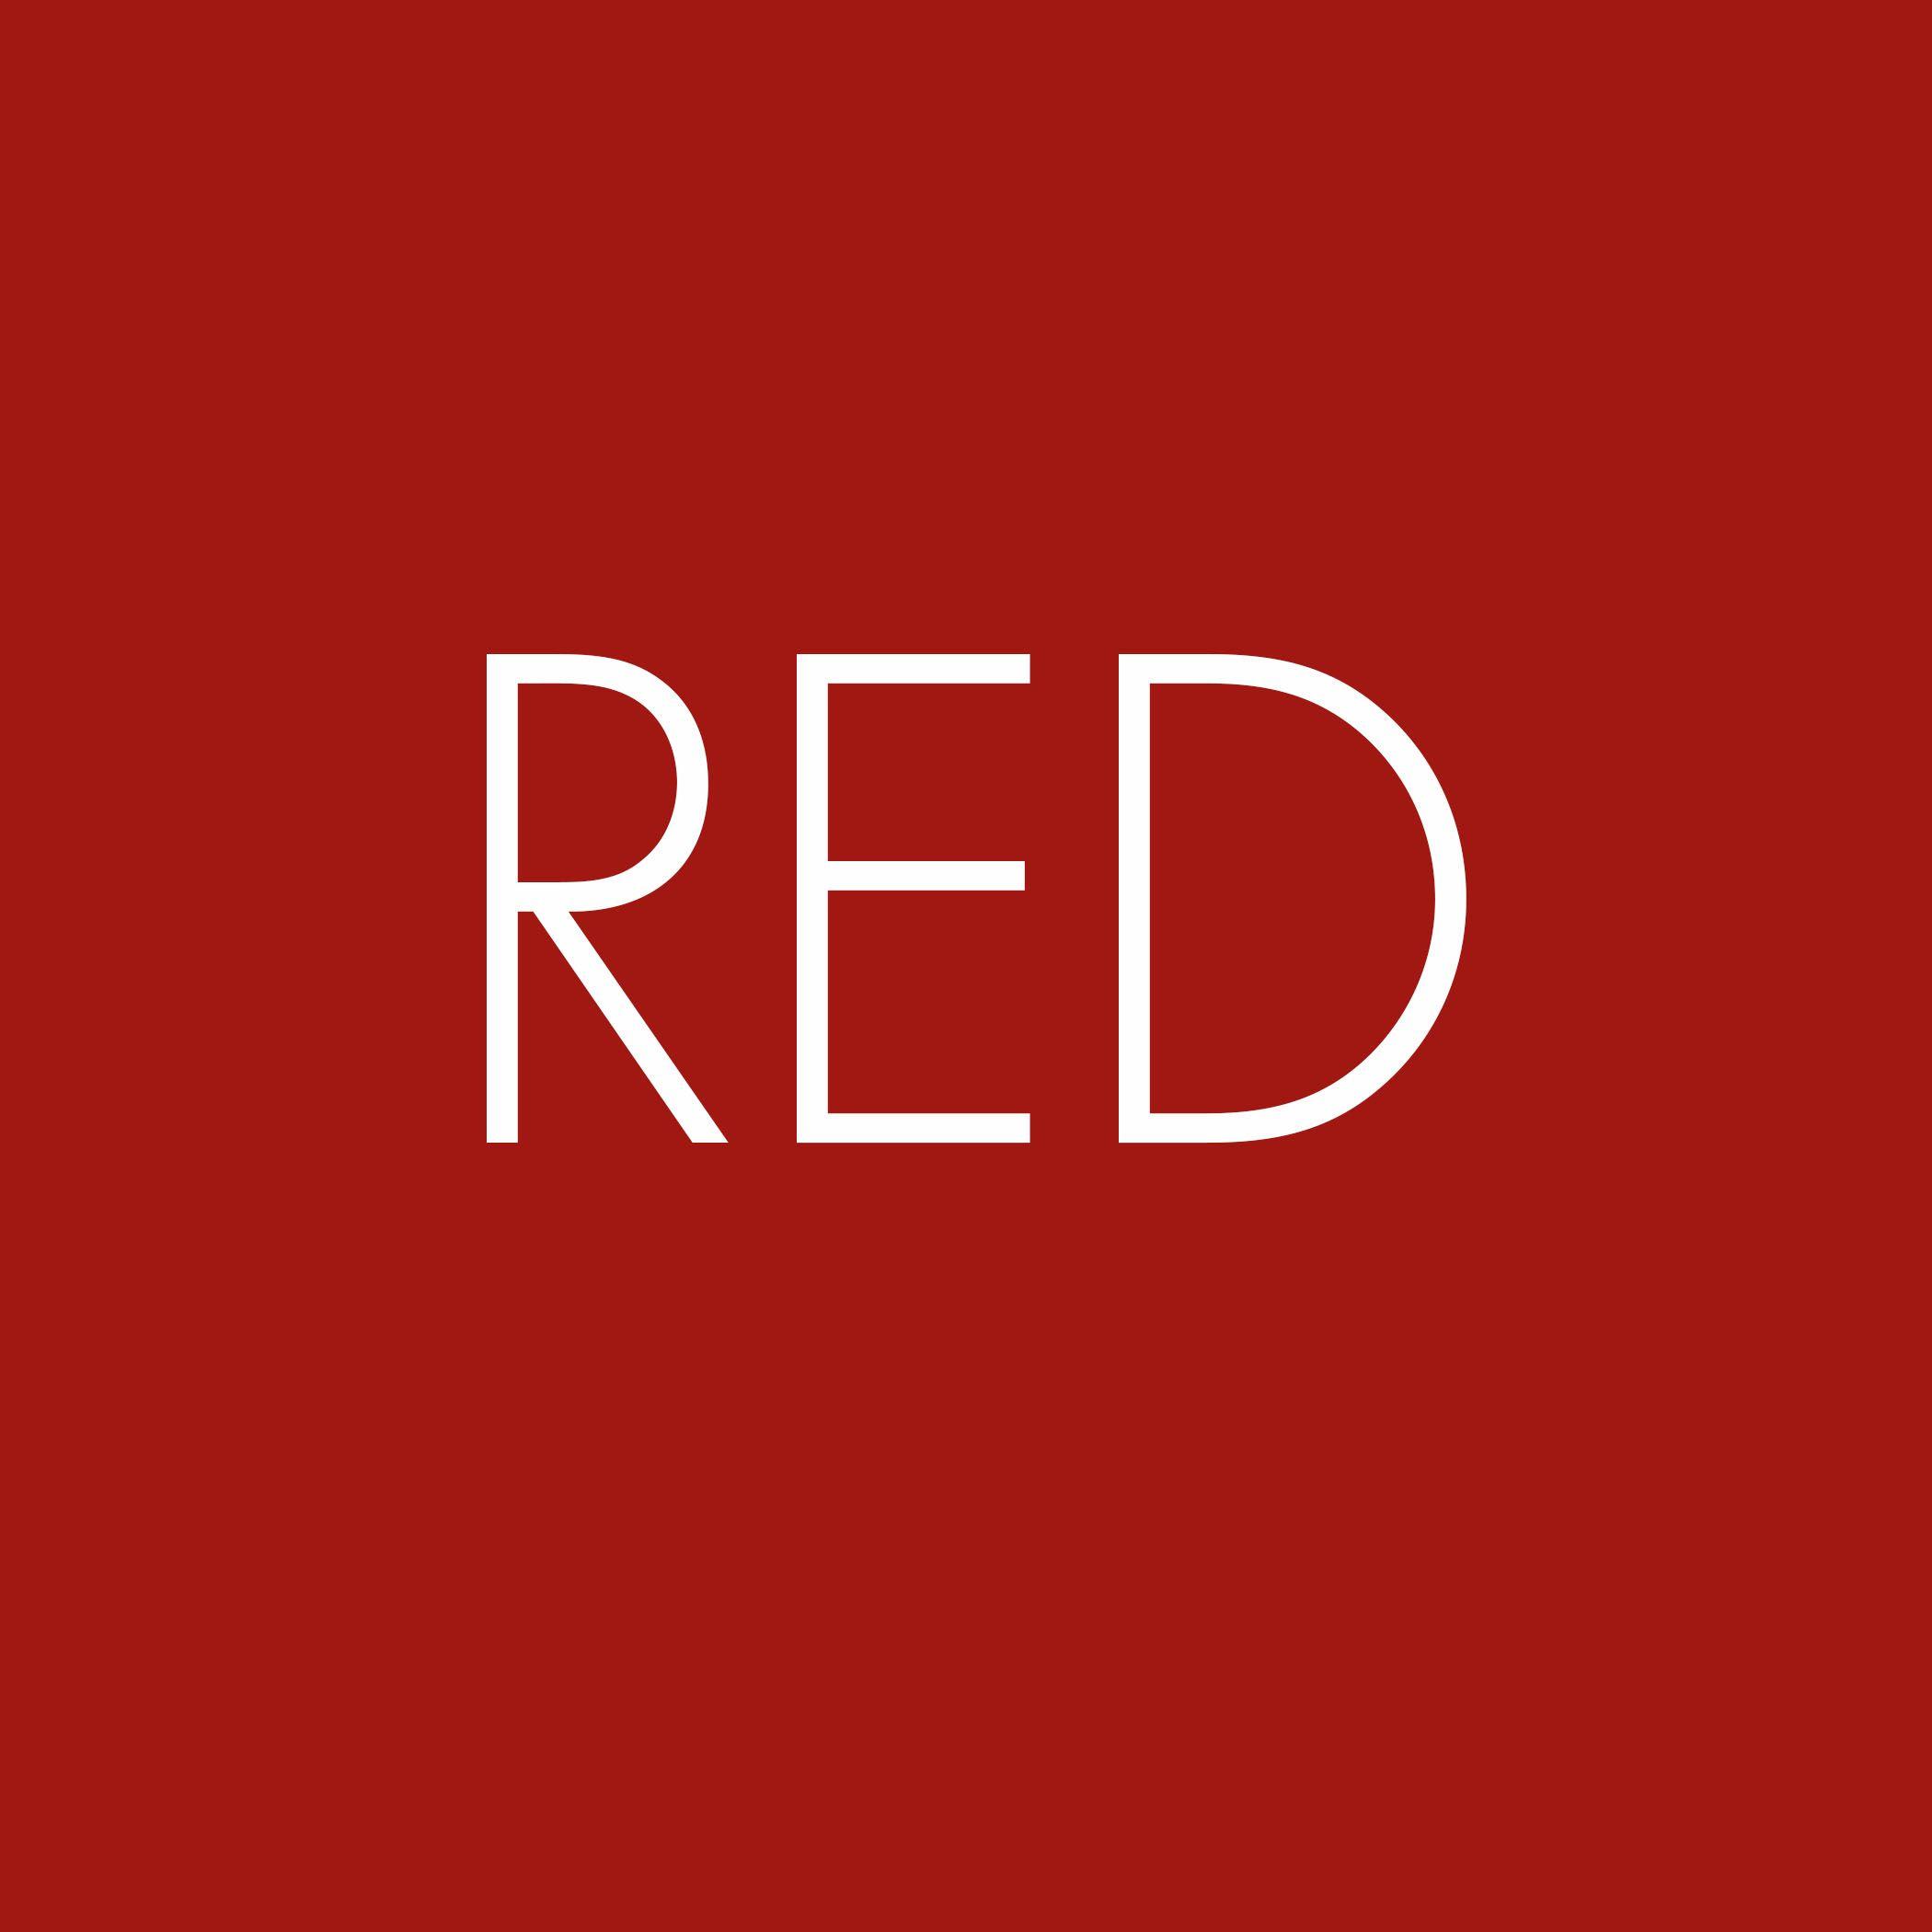 Red Color Logo - Red in Marketing - Color Psychology - Artitudes Design